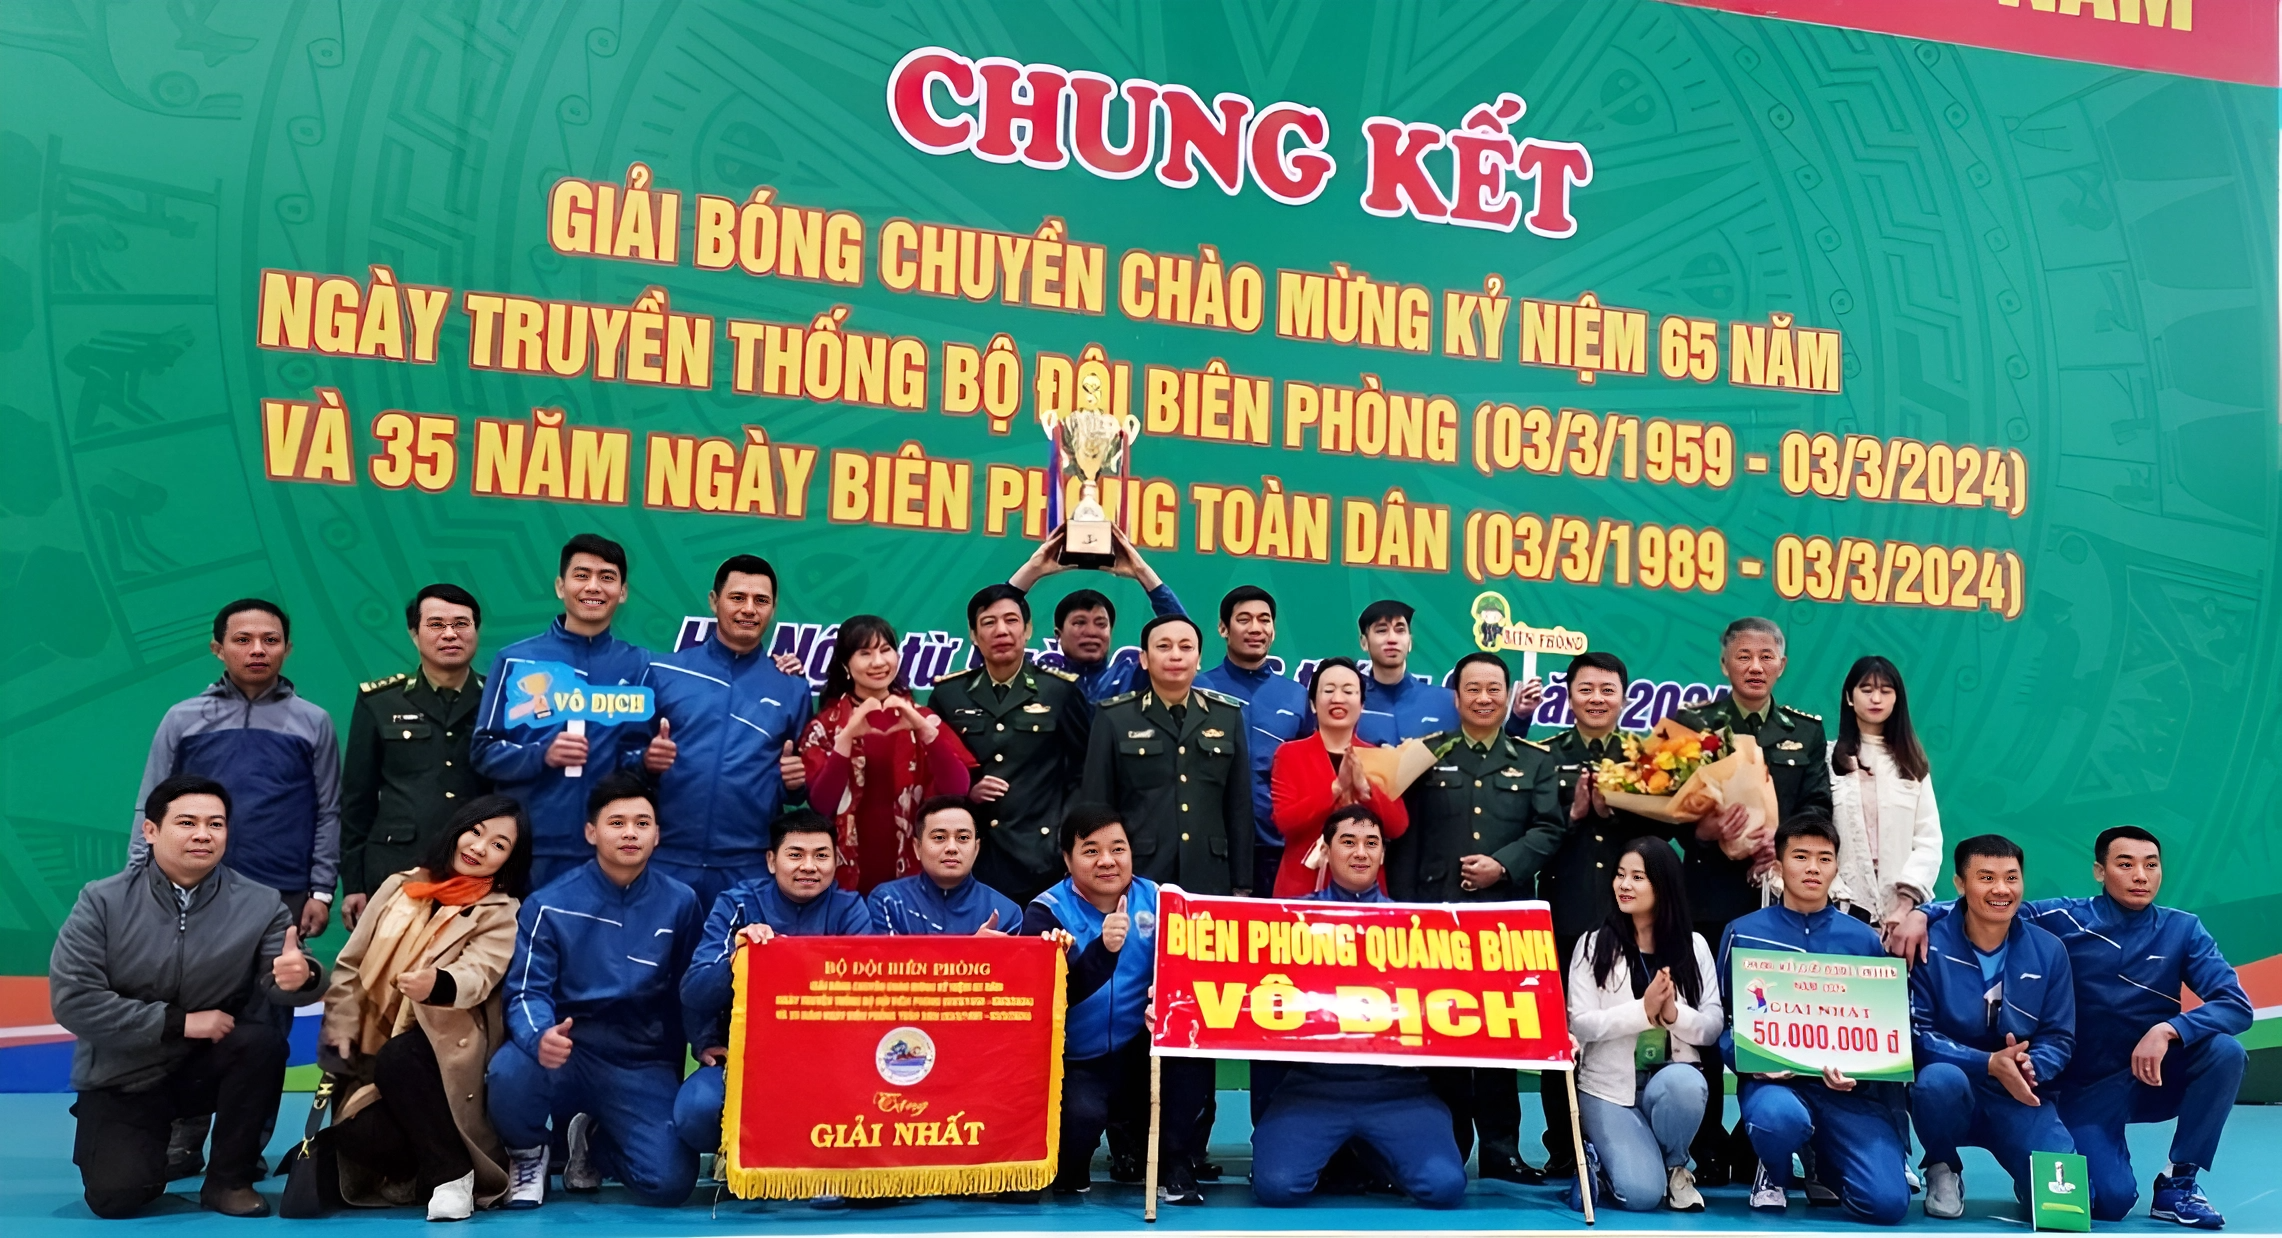 Đội bóng chuyền BĐBP tỉnh Quảng Bình vô địch giải bóng chuyền kỷ niệm 65 năm truyền thống Bộ đội Biên phòng